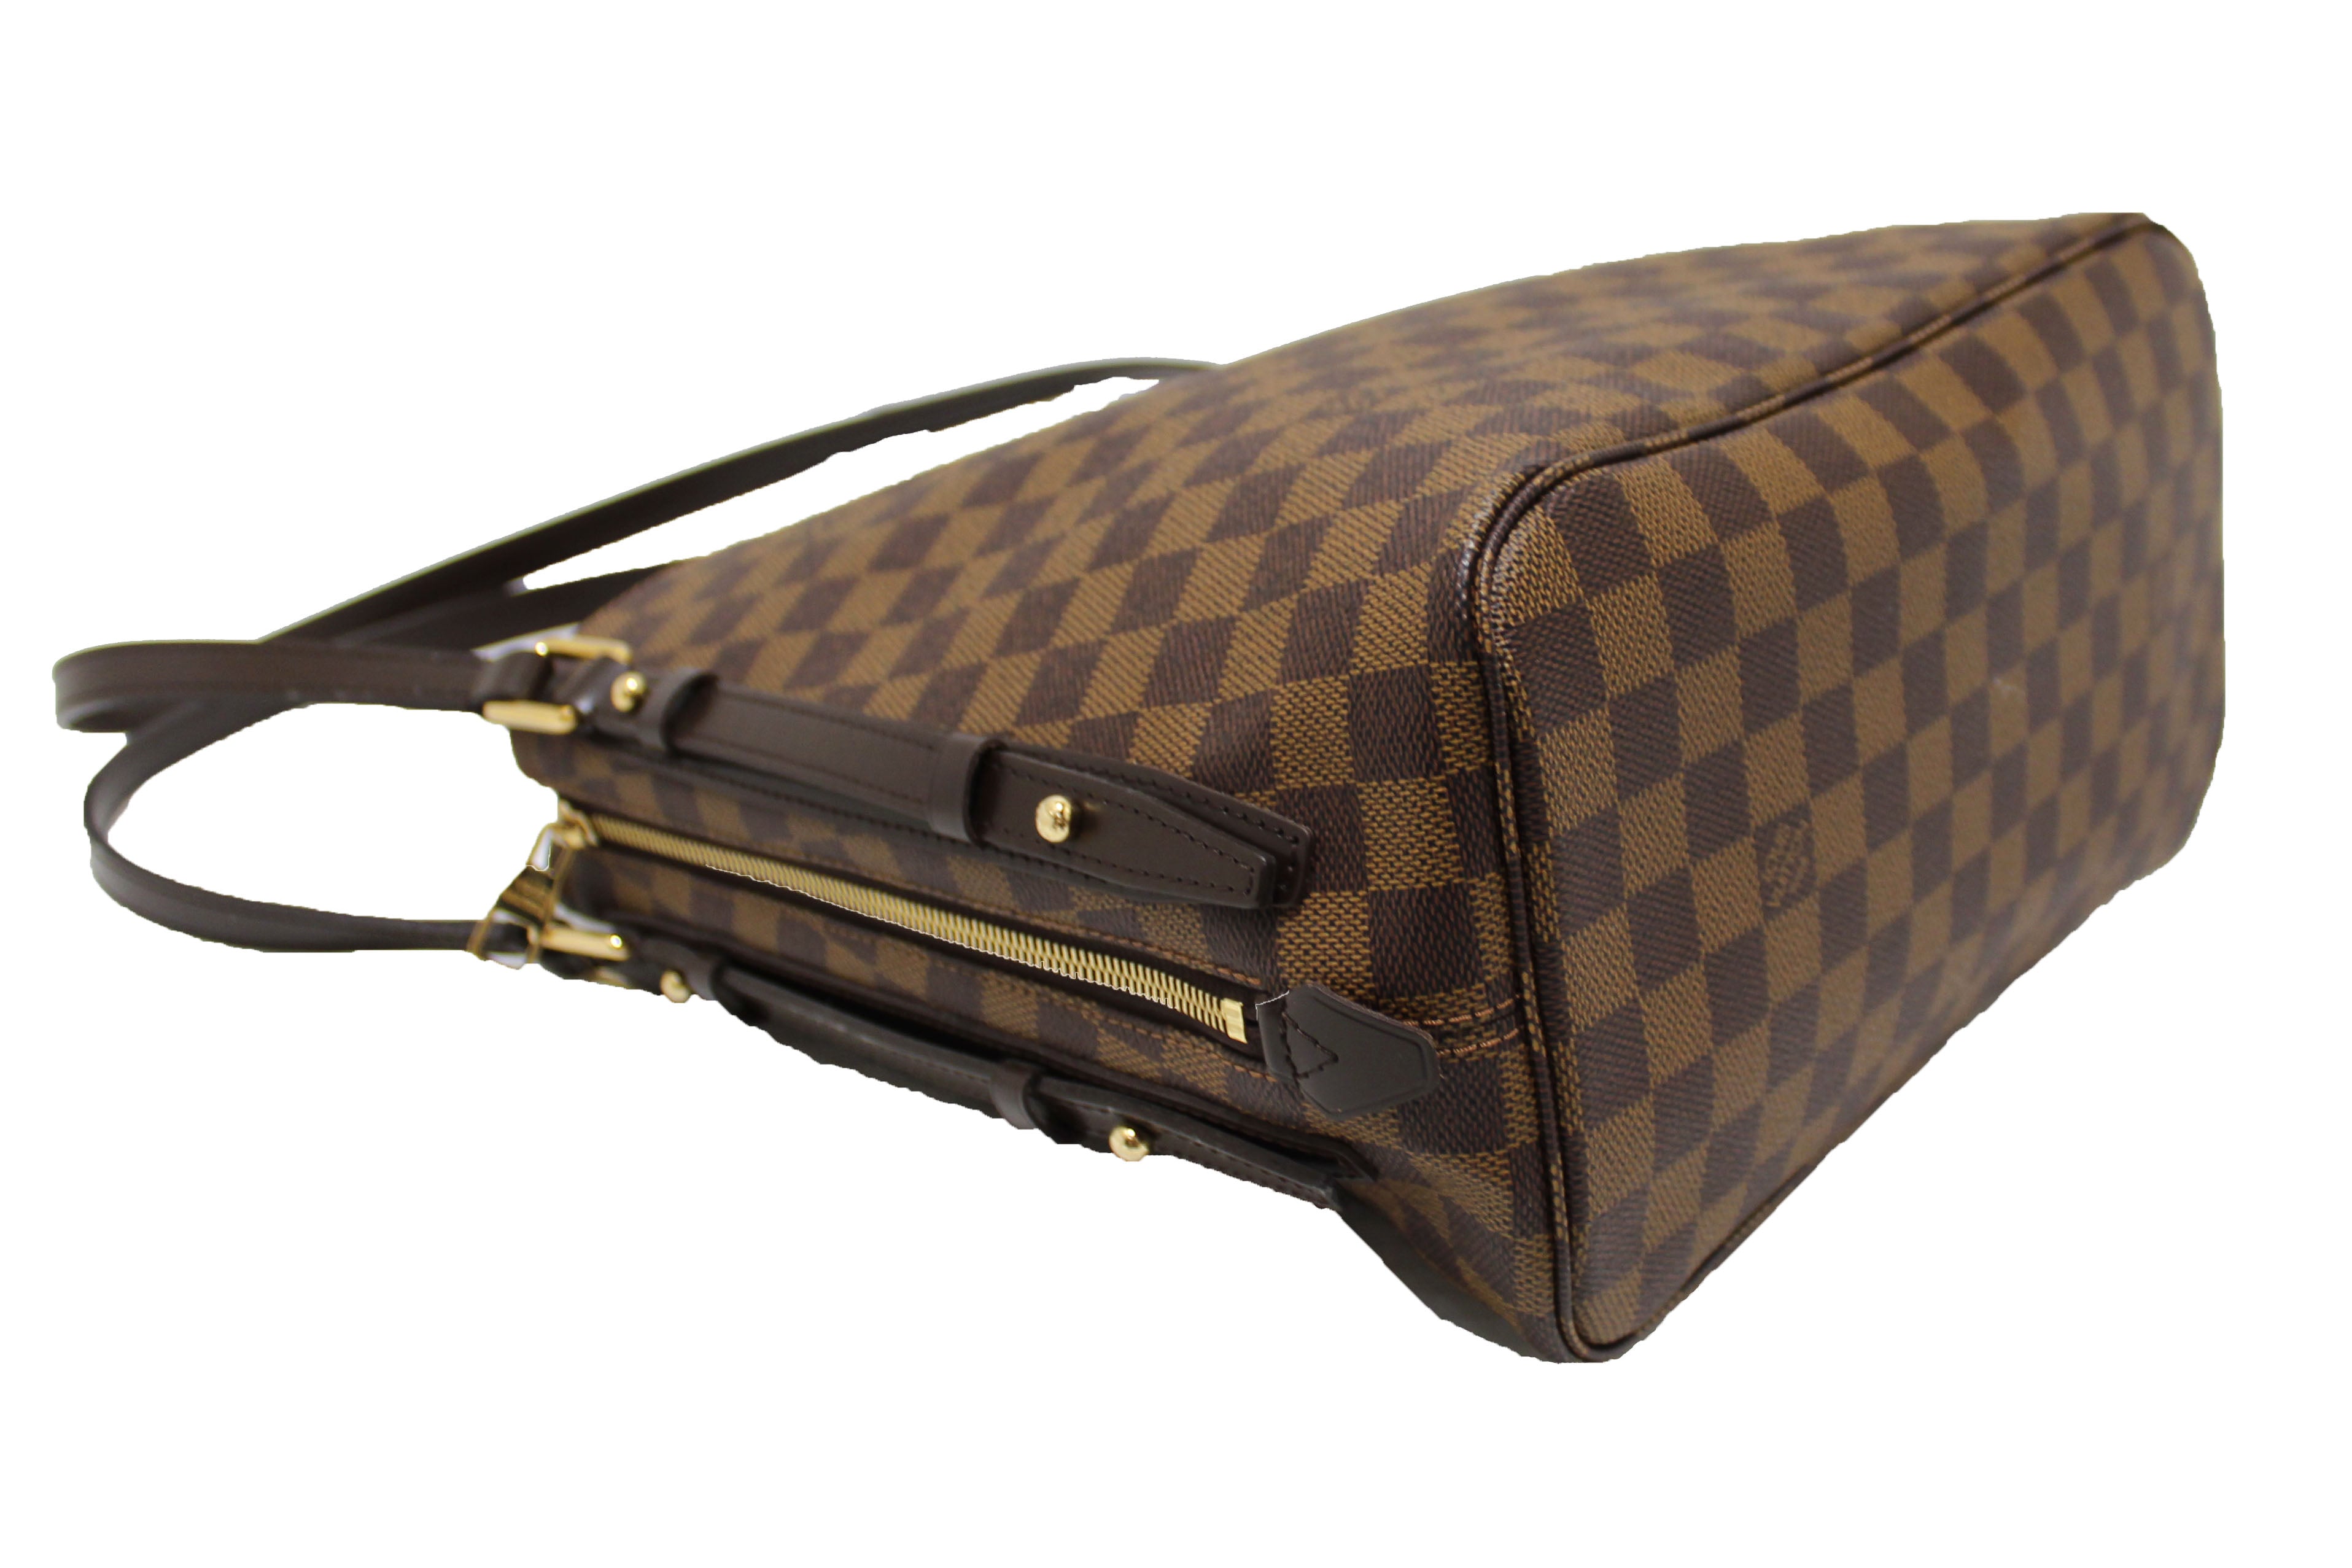 Louis Vuitton, Bags, Authentic Louis Vuitton Damier Ebene Cabas Rivington  346m